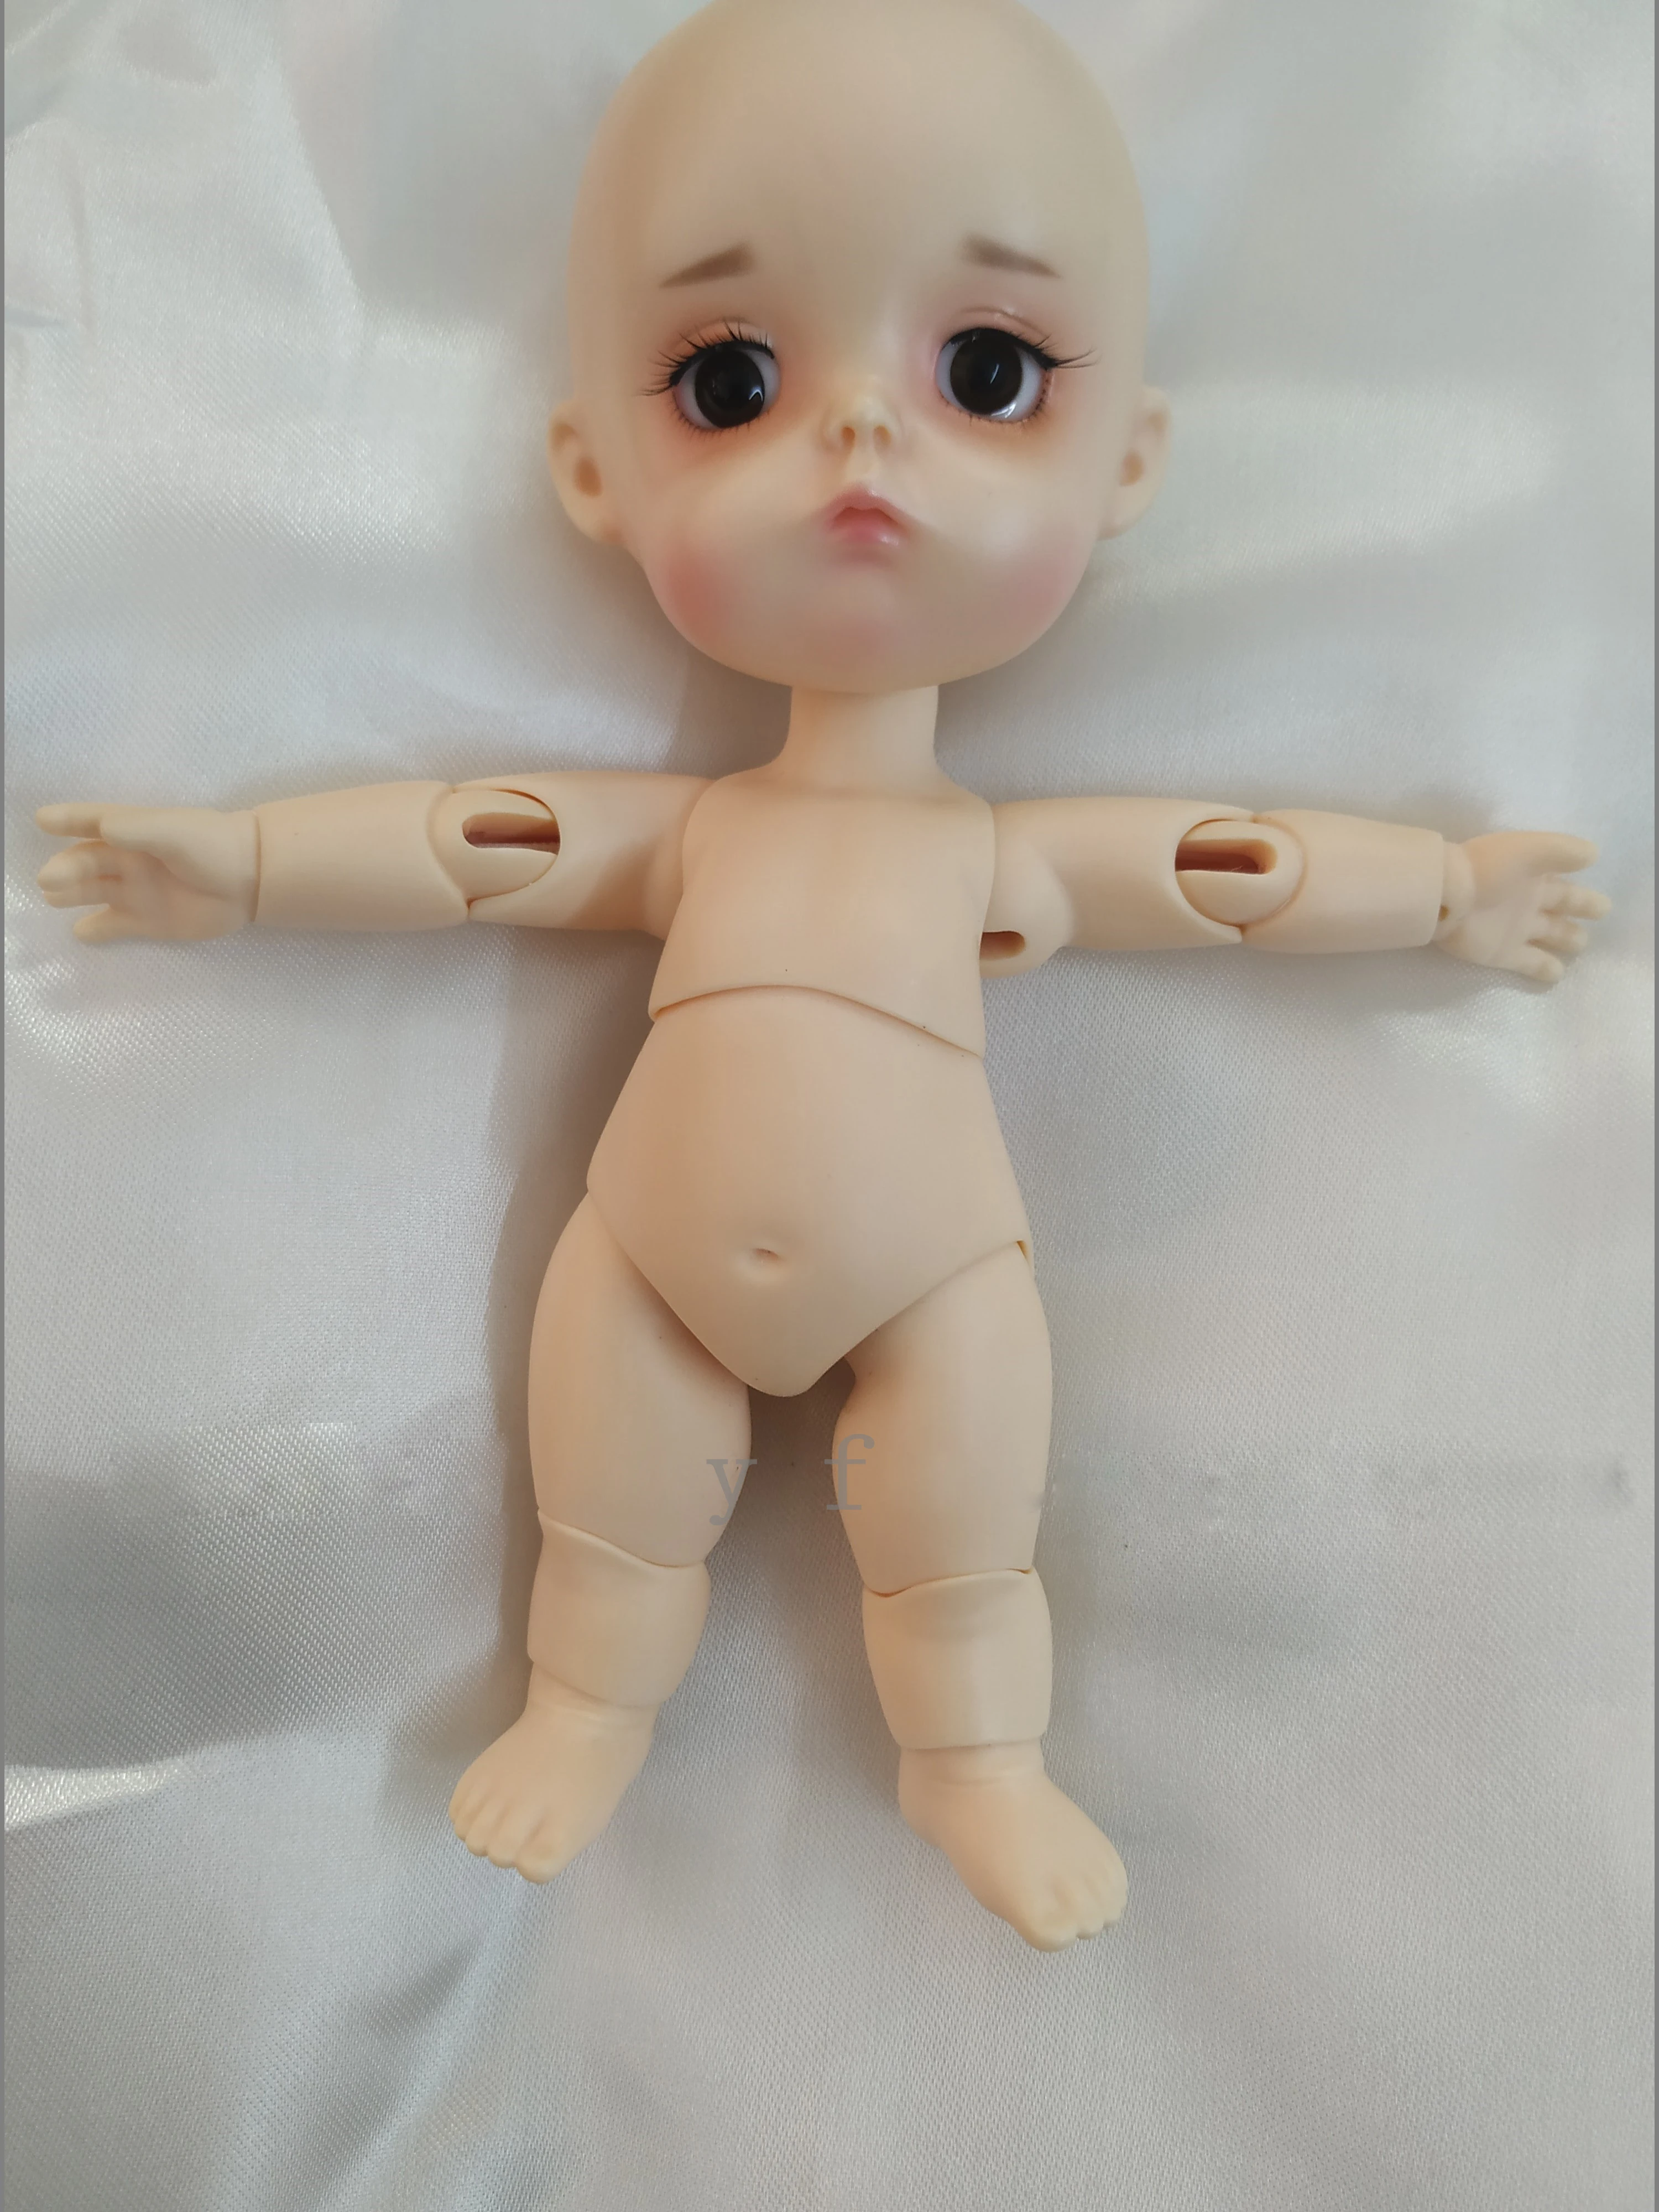 Кукла BJD 1/8 bru mong 1 # Fashion joint doll прекрасный подарок Бесплатная доставка Изображение 0